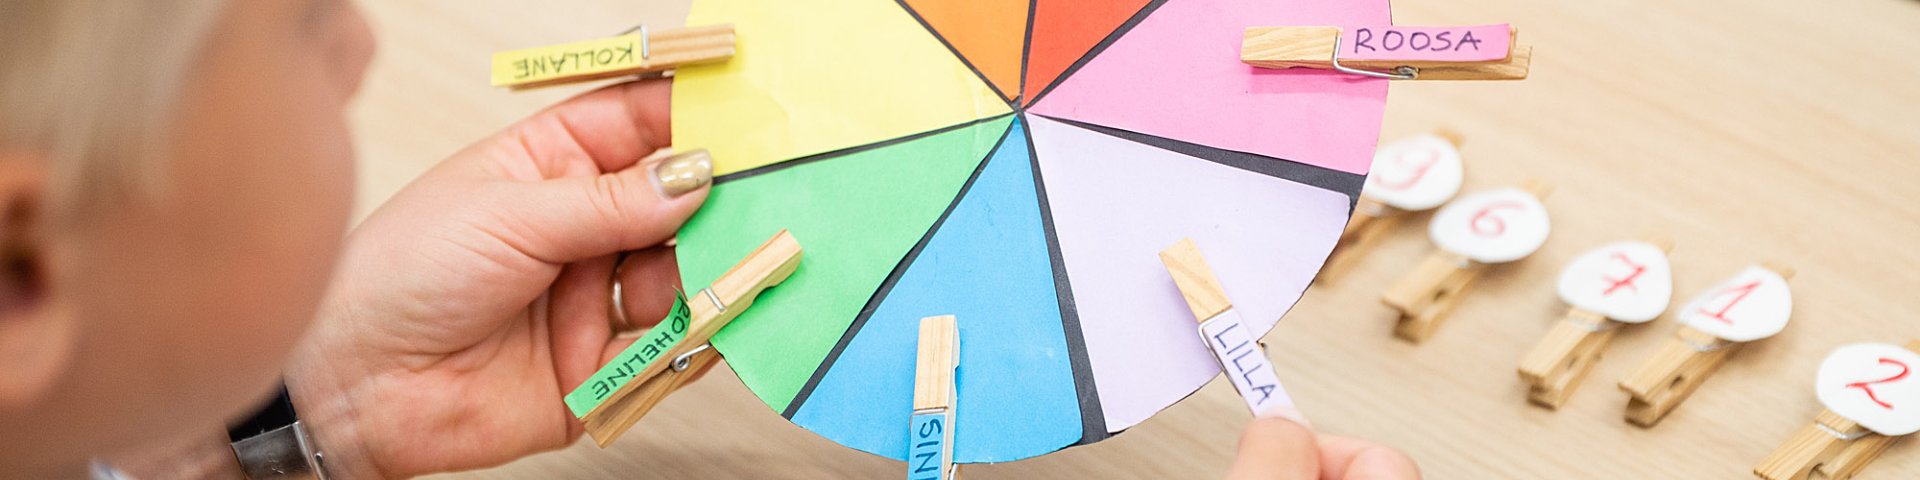 Värvide nimetuste harjutusketas lapse ees laual.